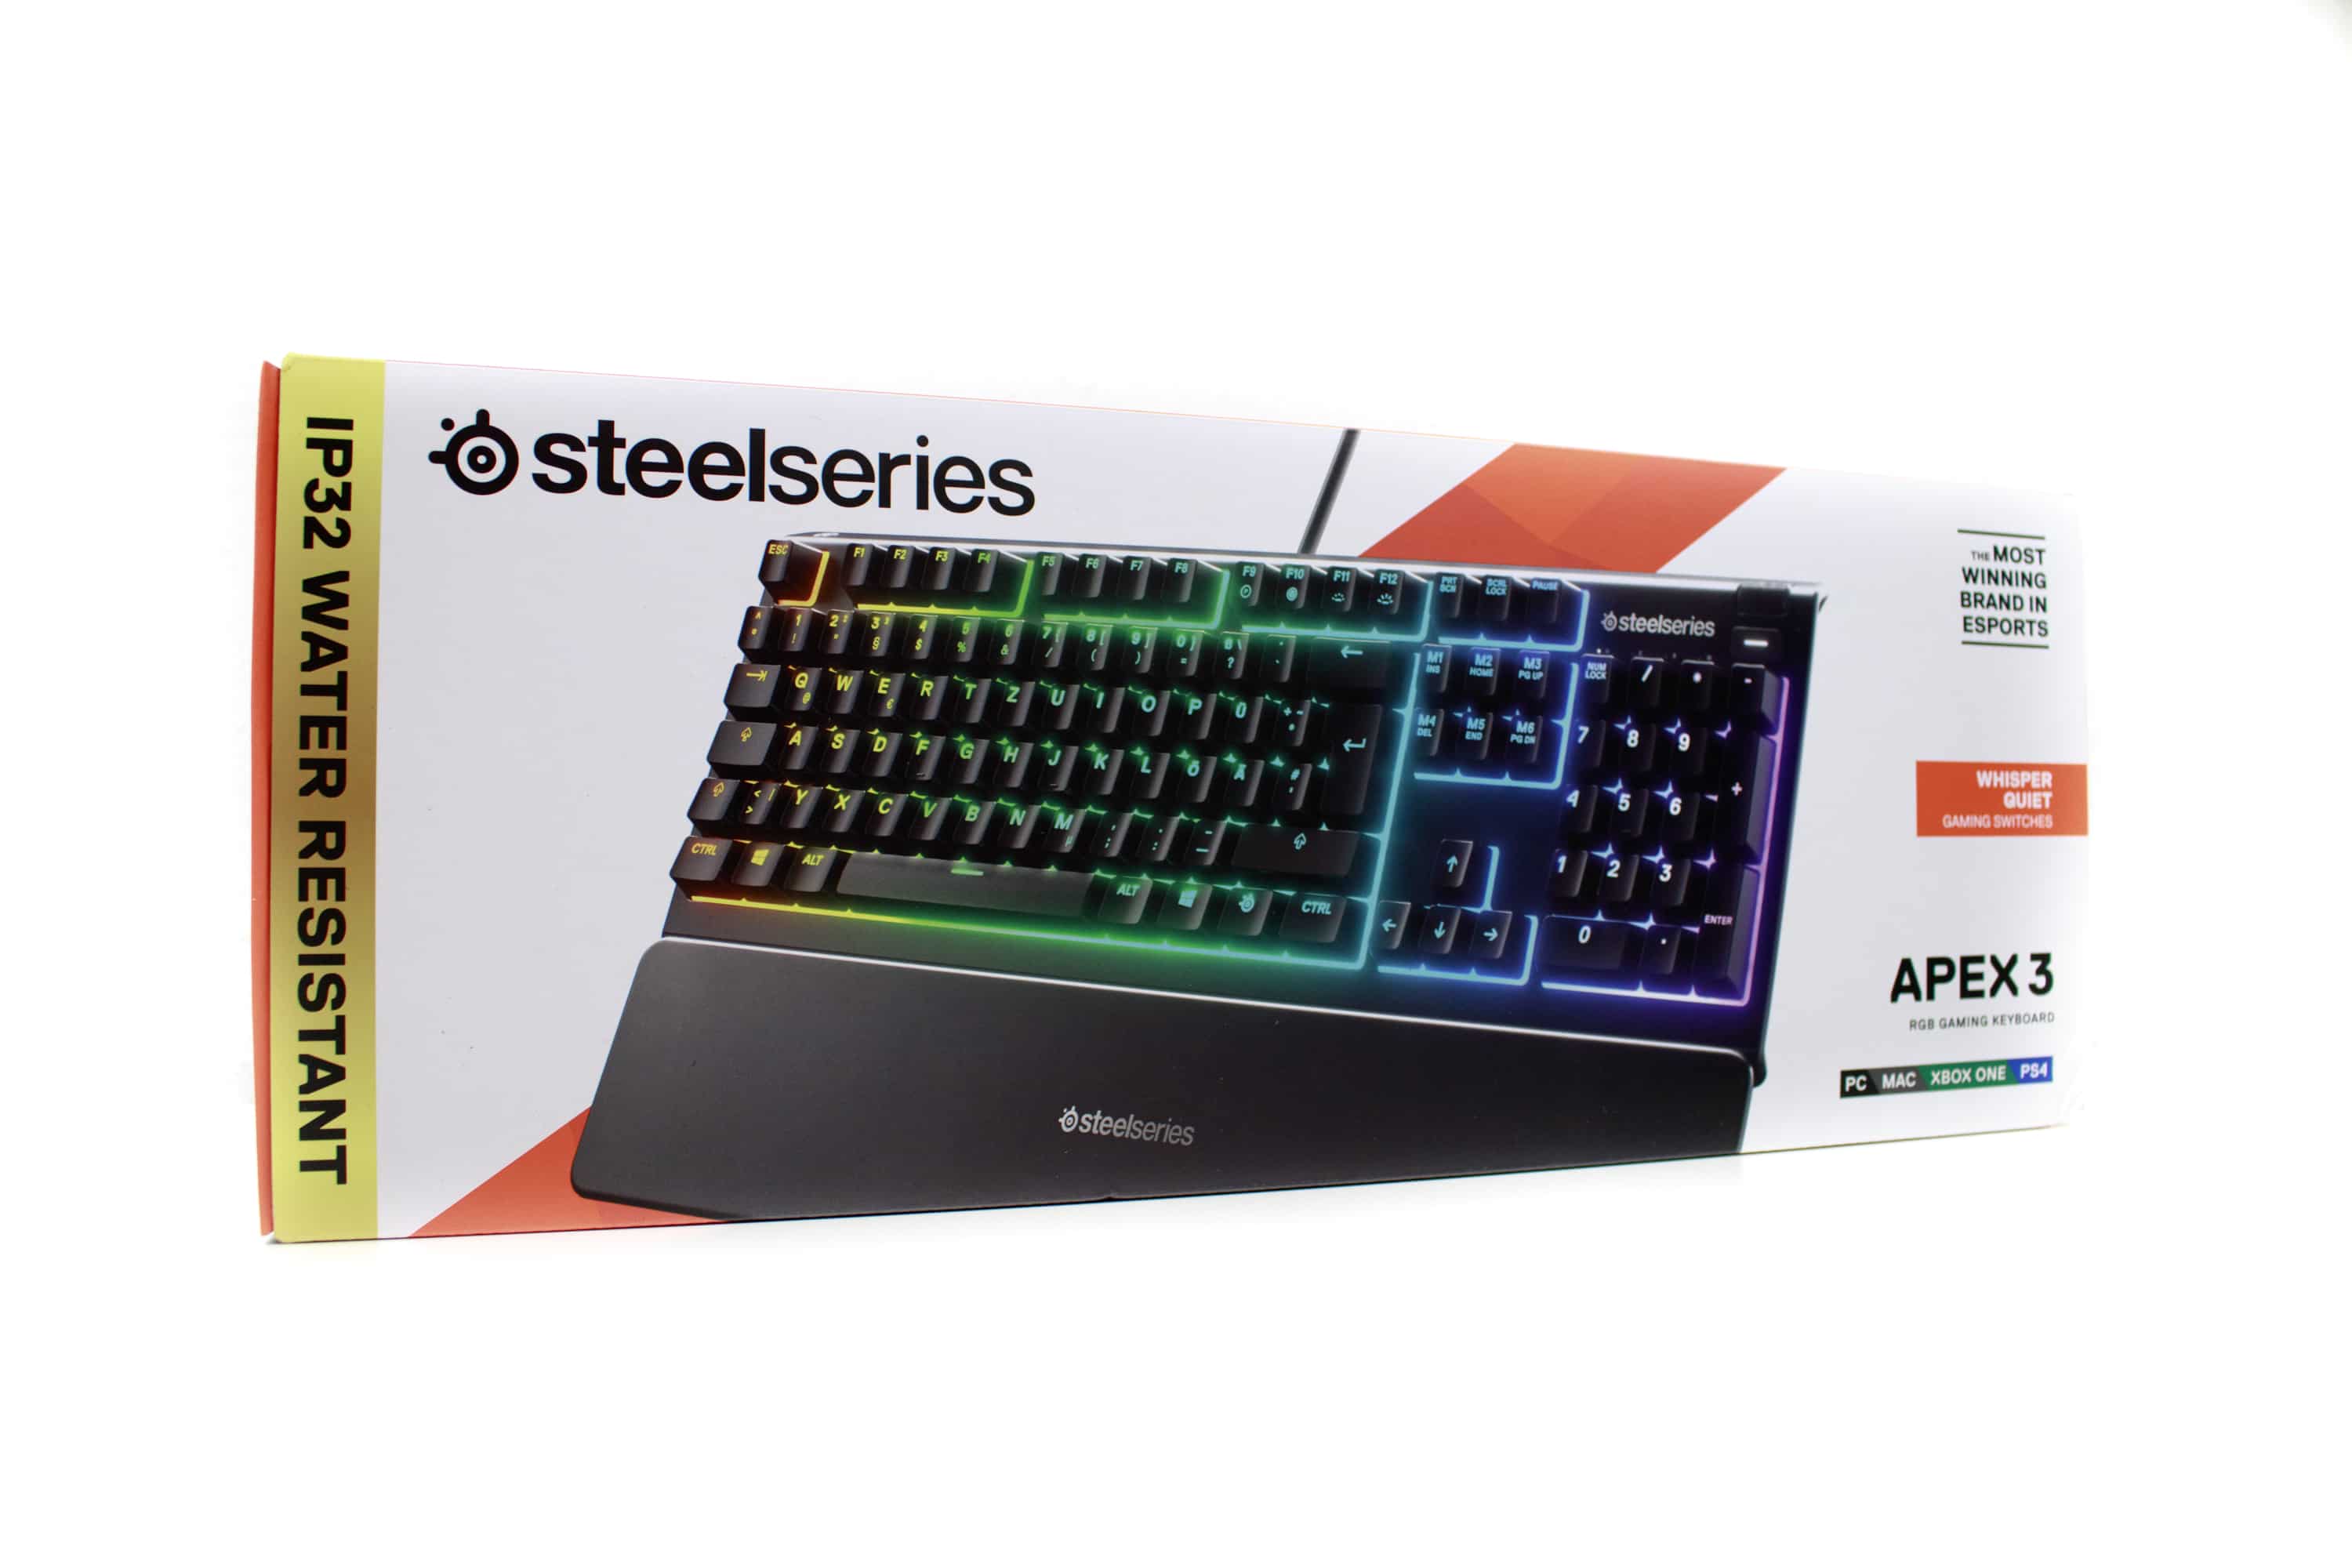 - test SteelSeries keyboard 3 Apex gaming water-resistant under